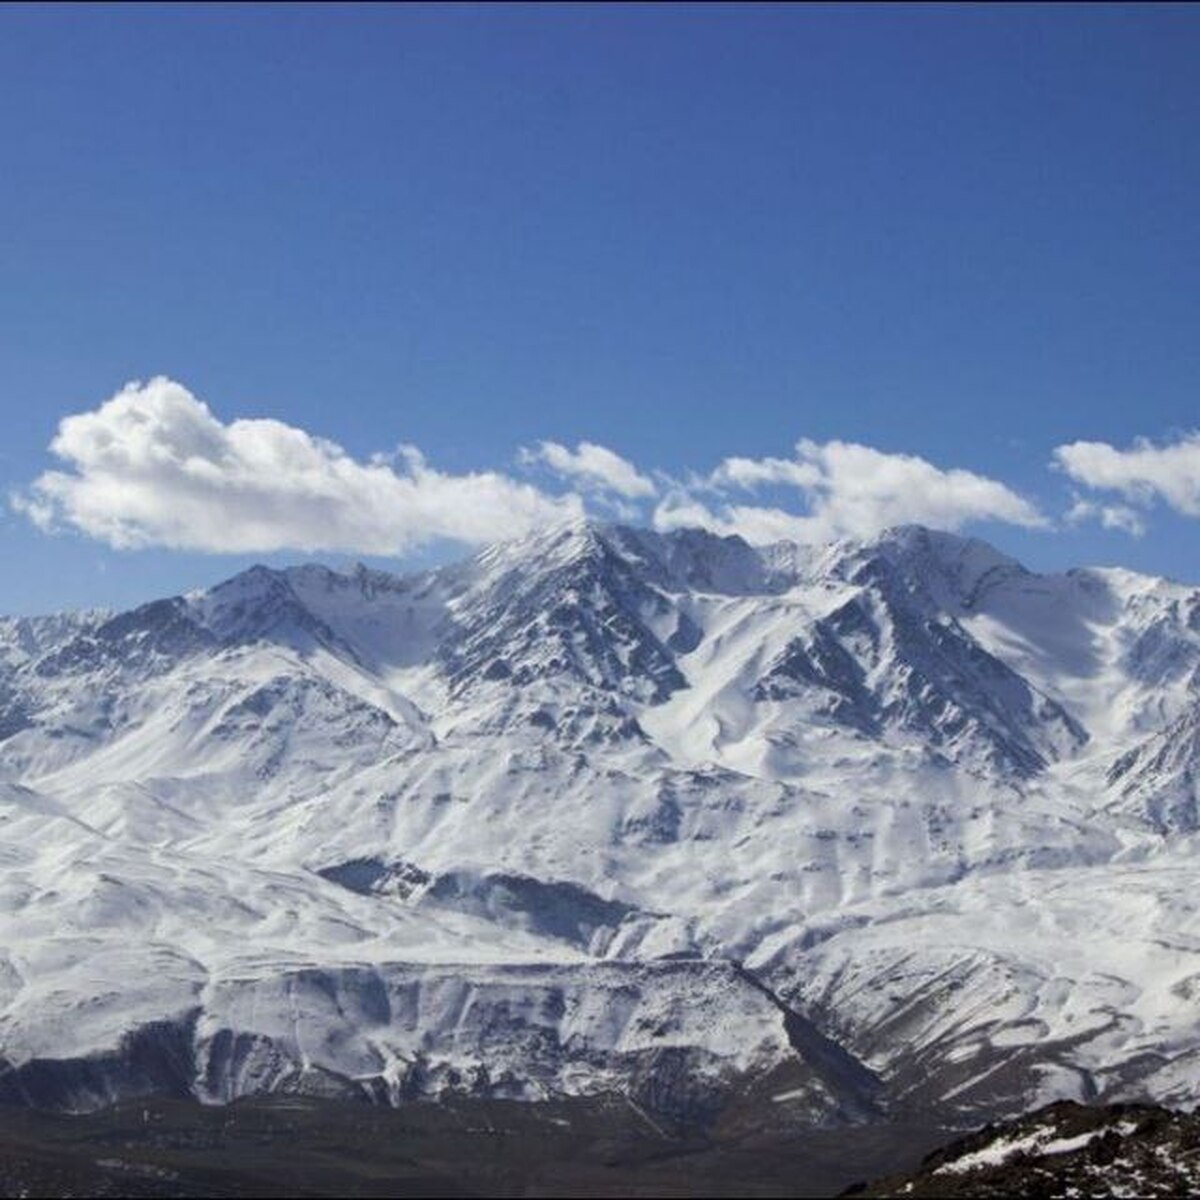 ۹ کوهنورد مفقود شده در اشترانکوه گرفتار بهمن شده اند / تلاش برای یافتن ۵ کوهنورد ادامه دارد